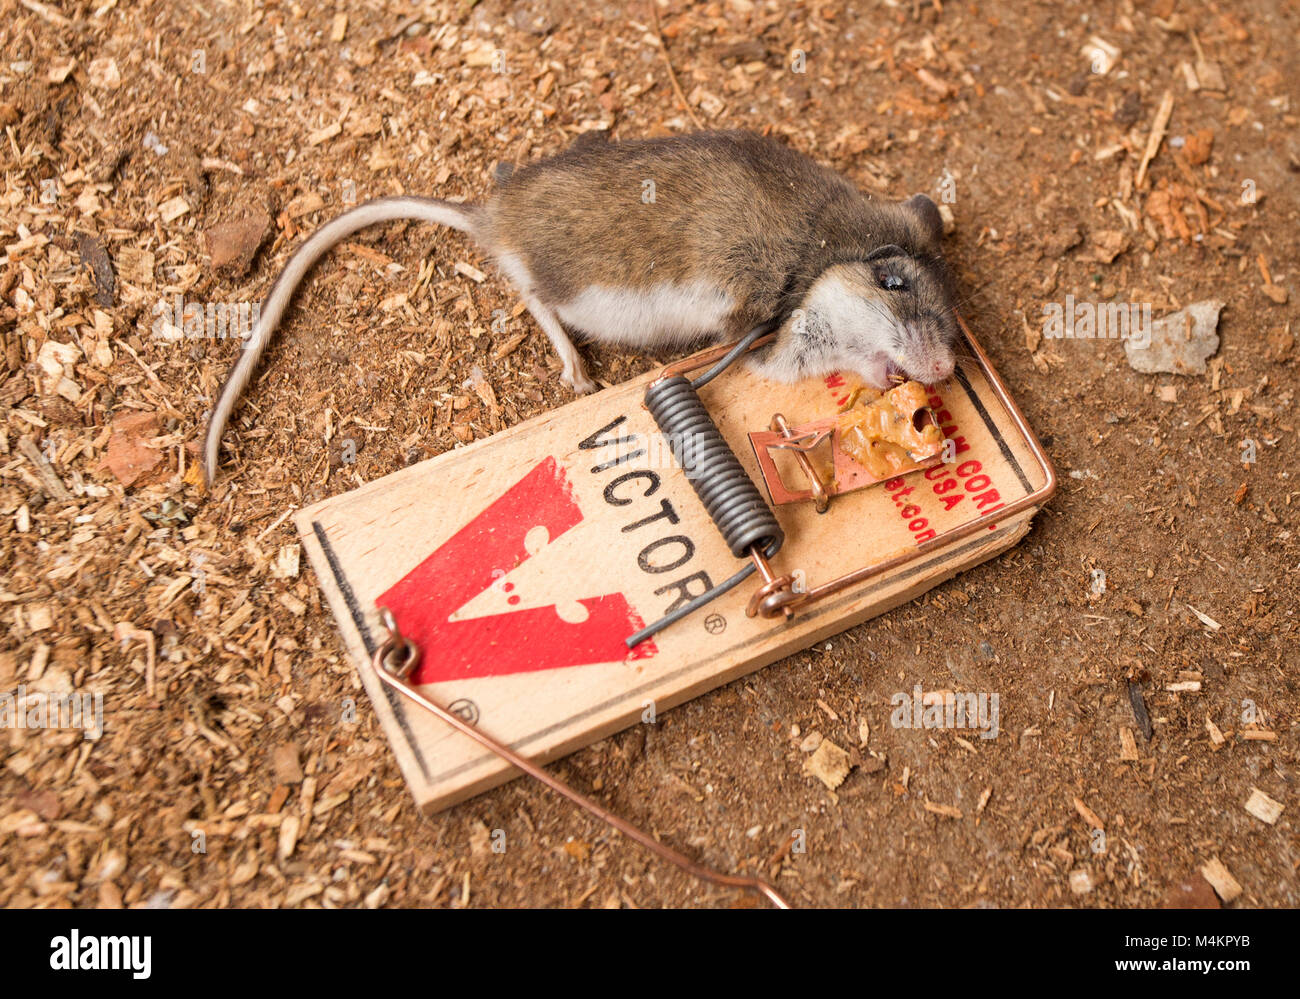 Topo morto in una trappola immagini e fotografie stock ad alta risoluzione  - Alamy